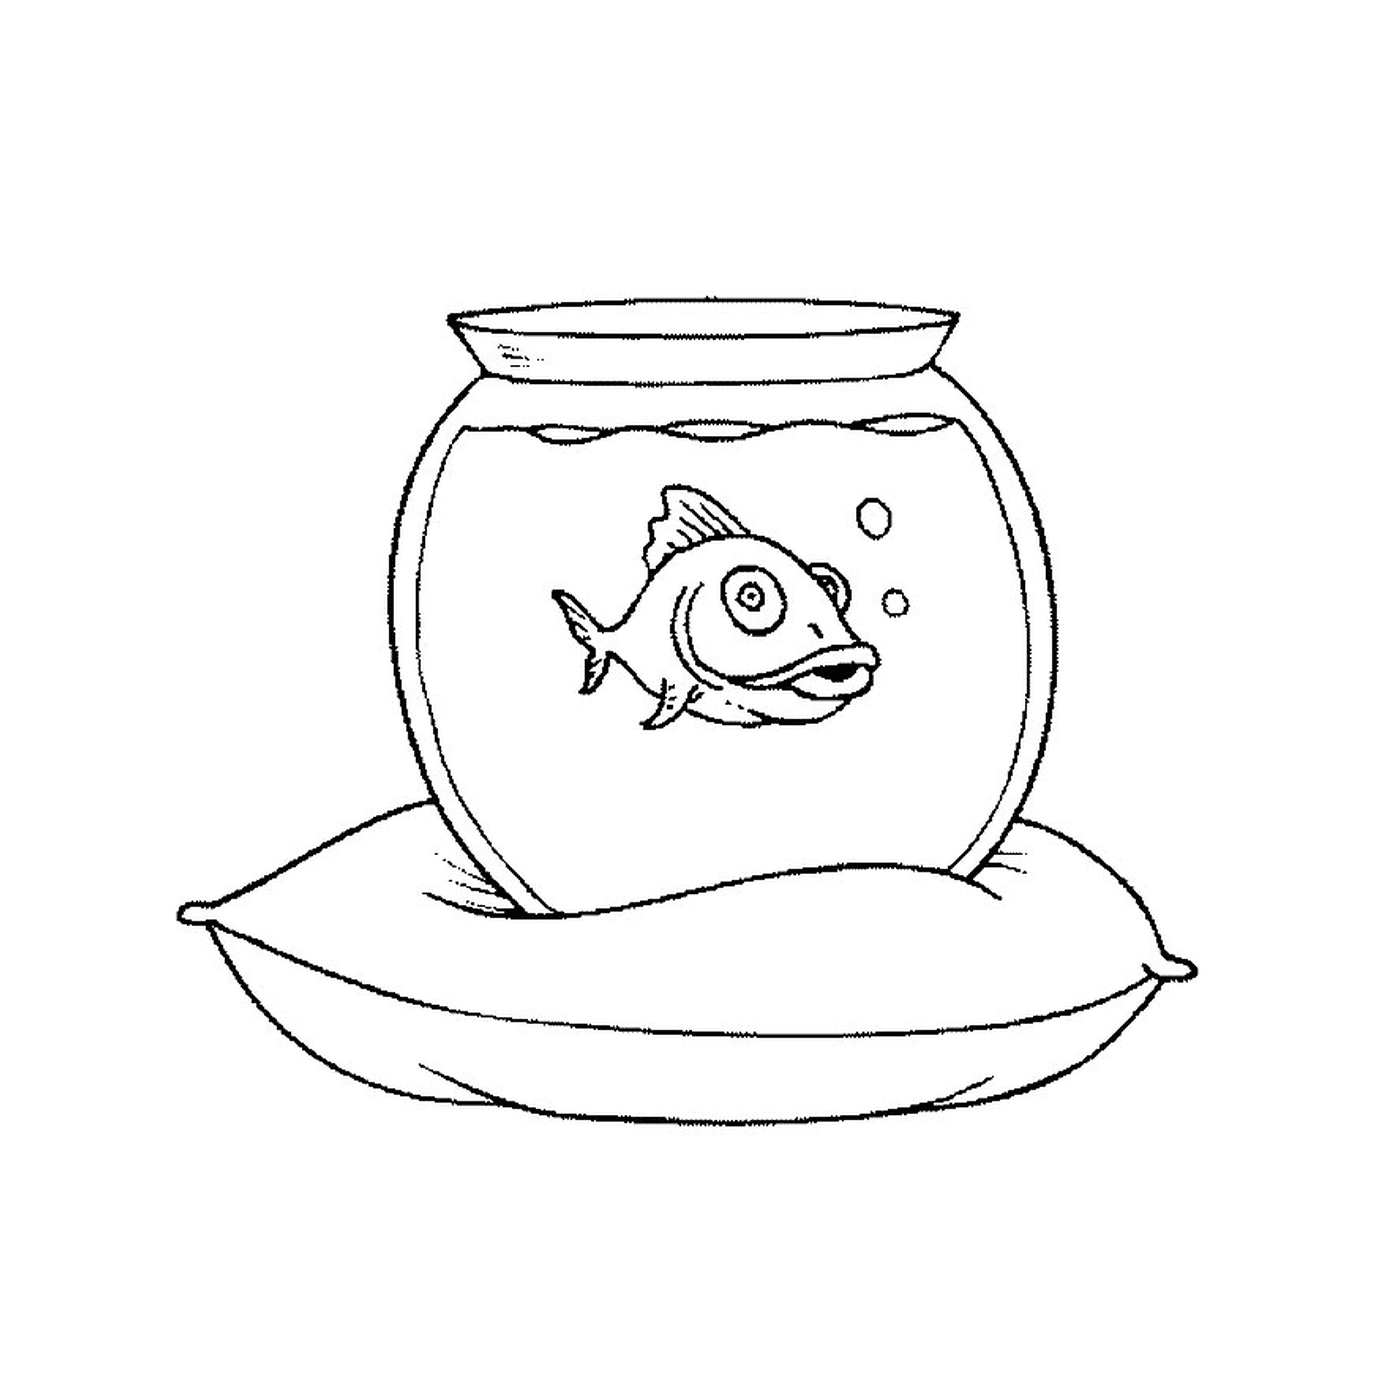  Peixes em um aquário 